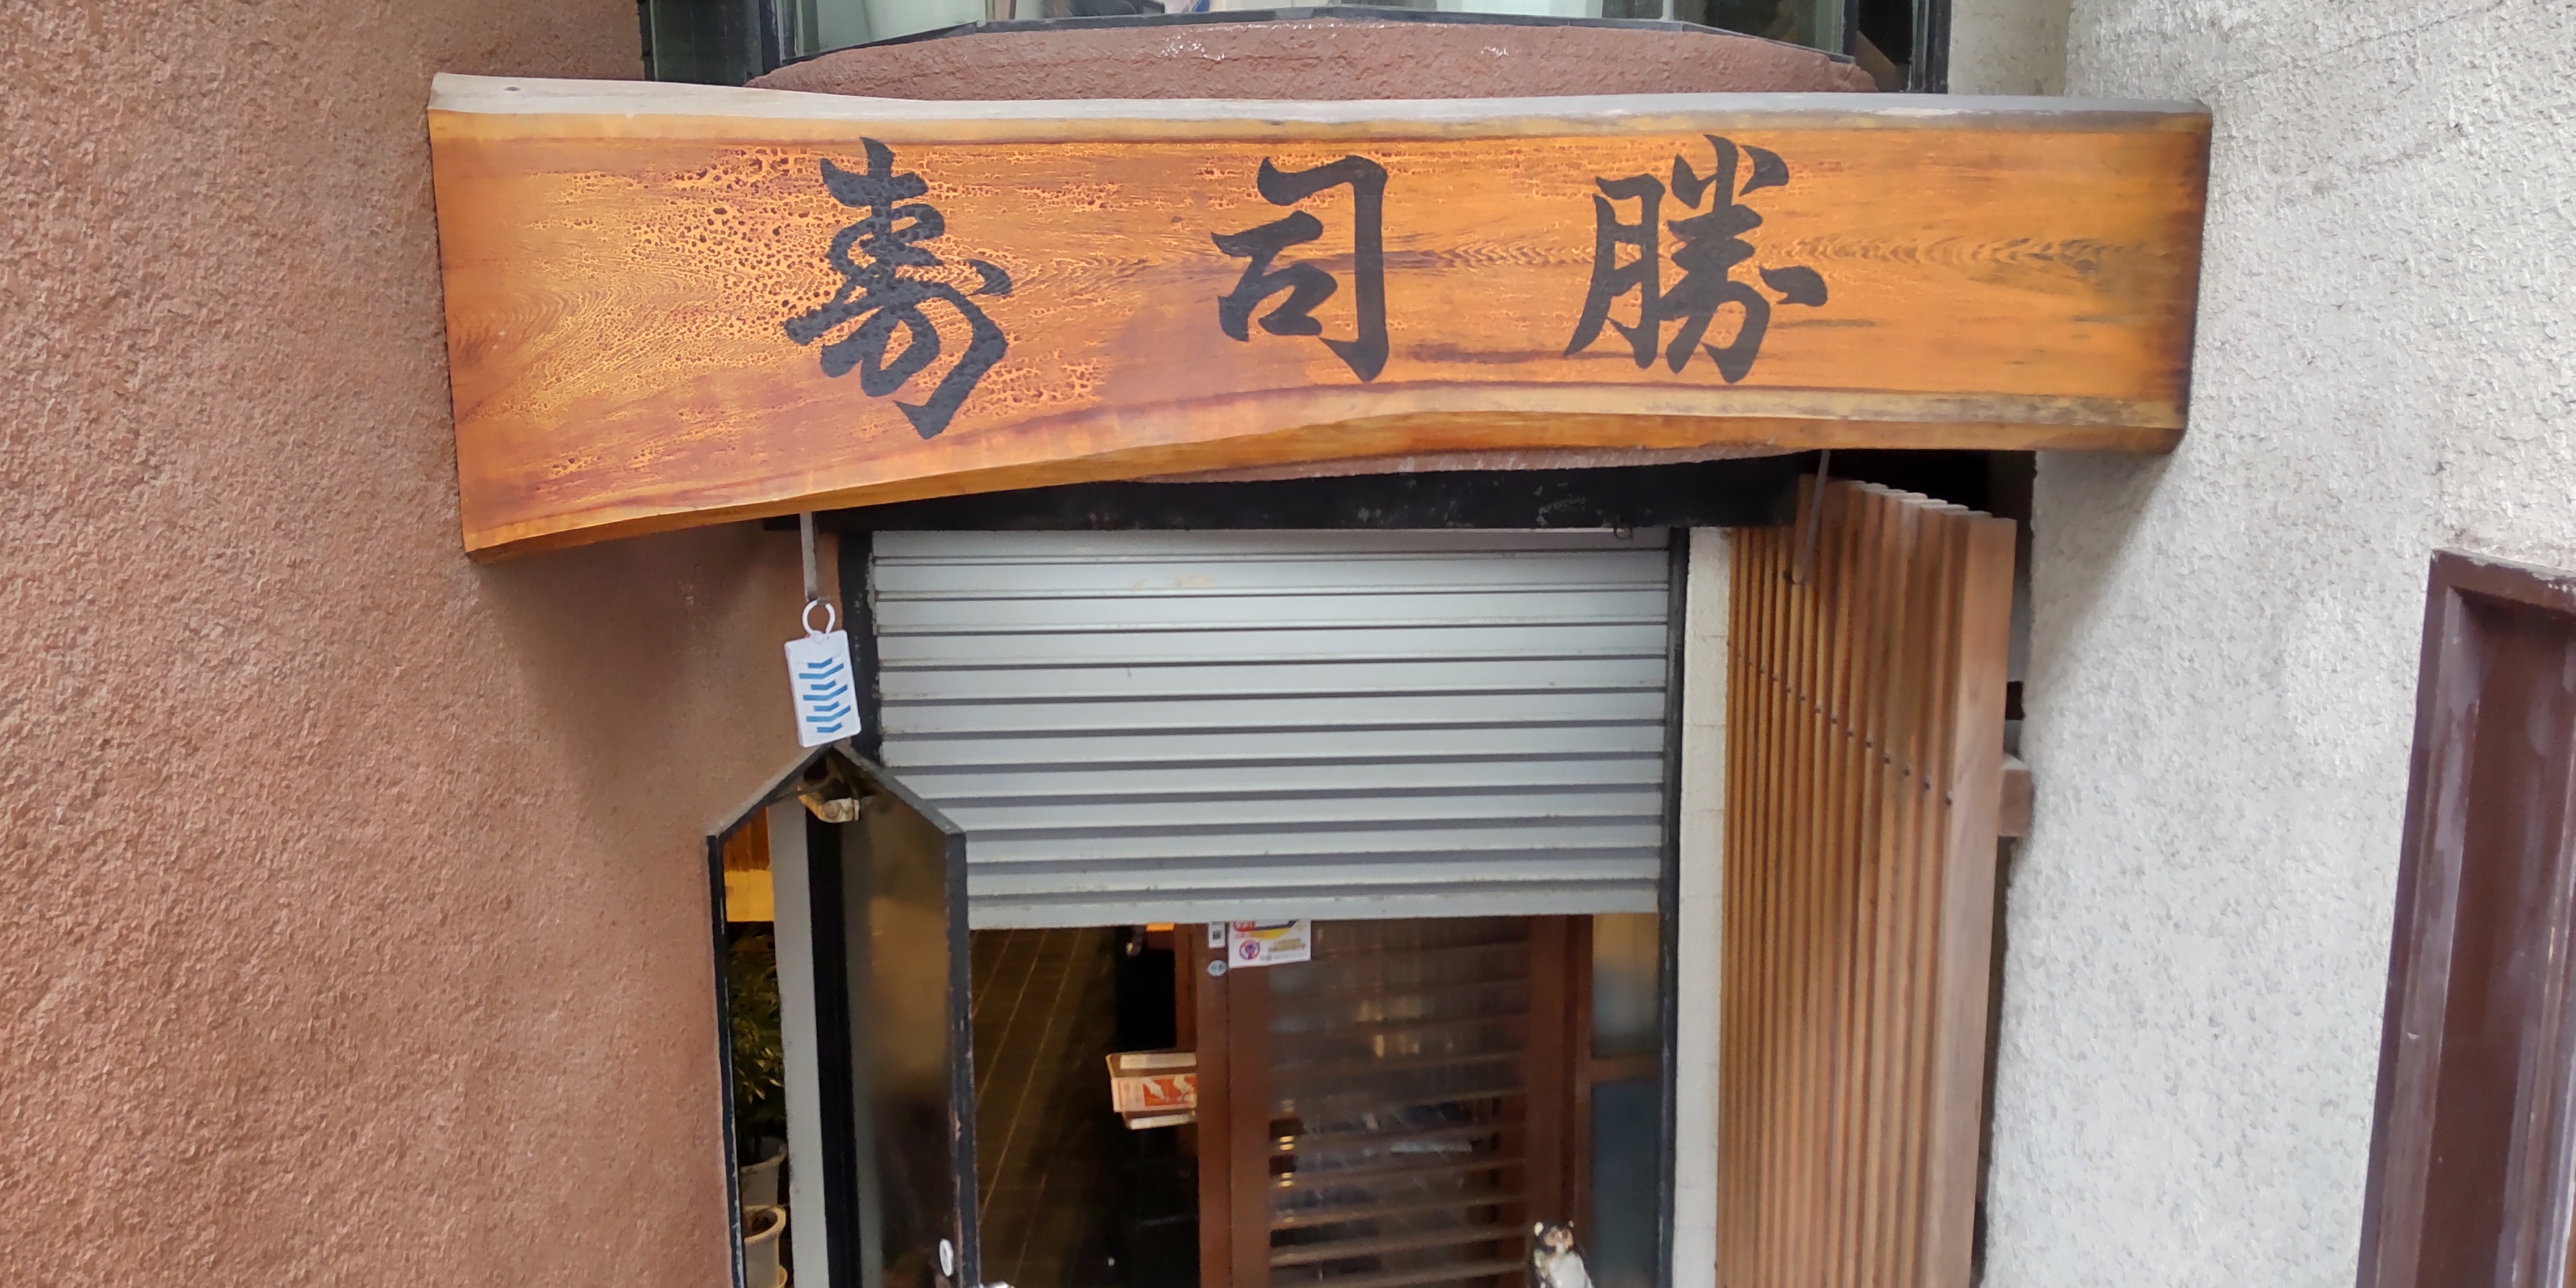 昭和23年よりこの場所で営業している
昔ながらの寿司屋です。